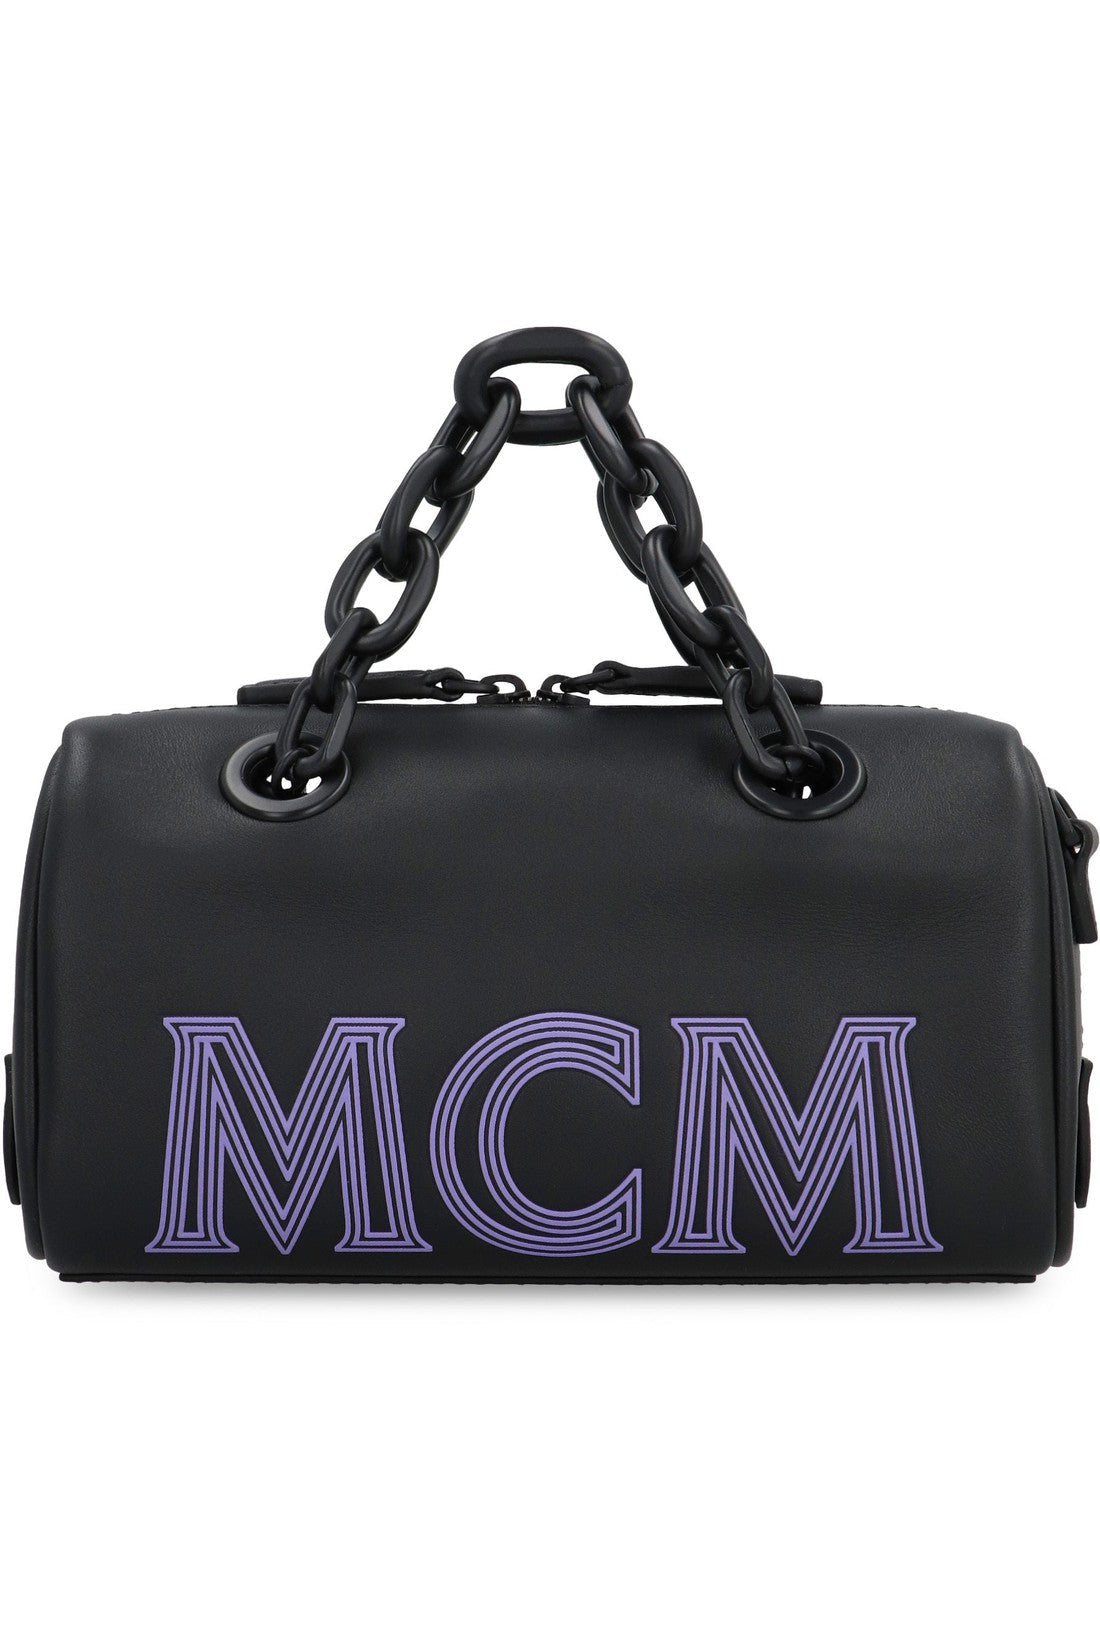 MCM-OUTLET-SALE-Leather mini handbag-ARCHIVIST